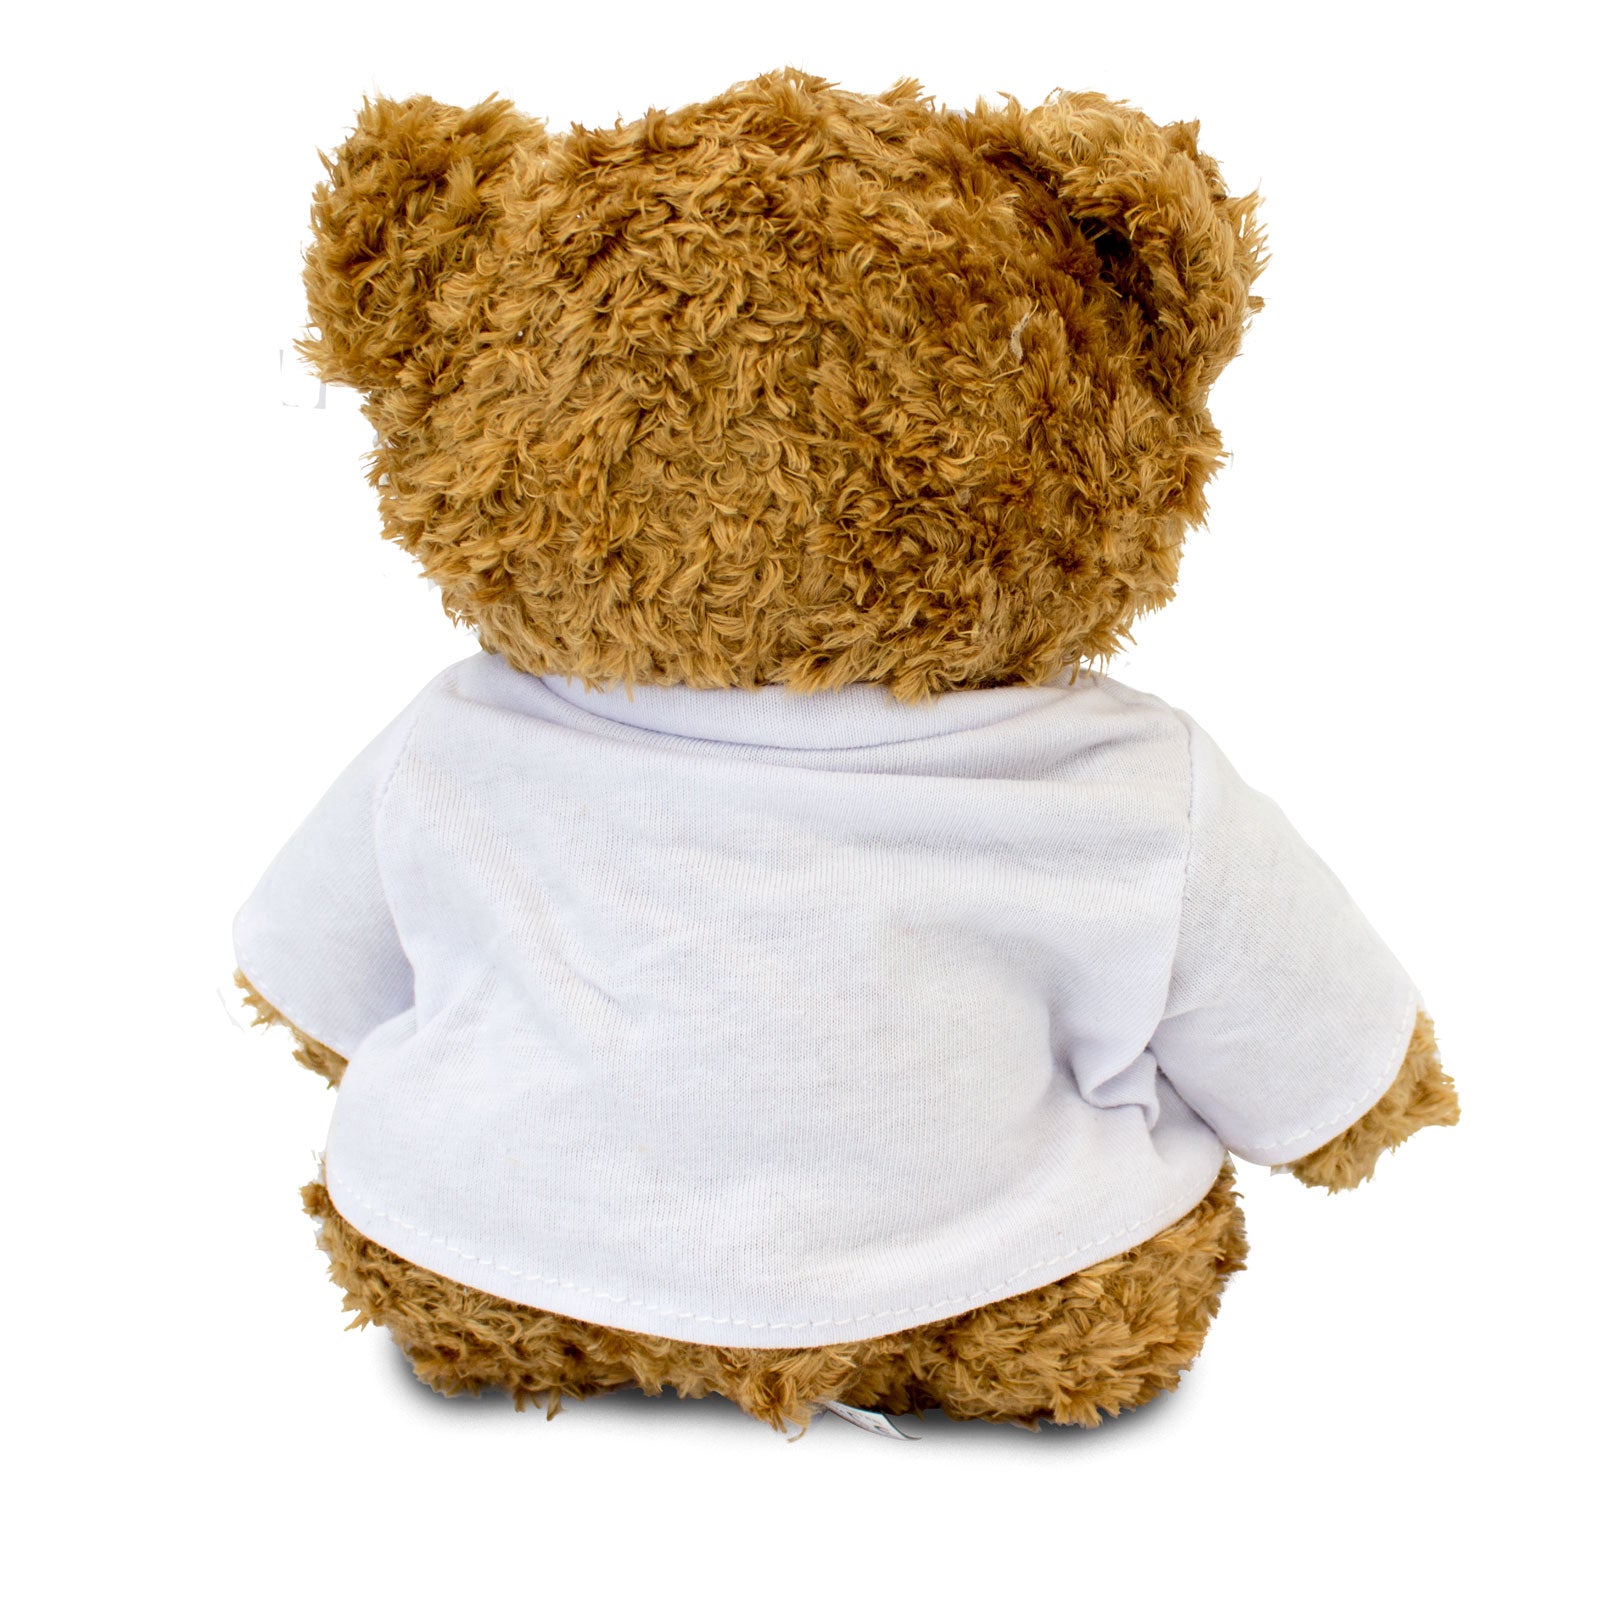 SUPER ABUELA - Teddy Bear - Cute Soft Cuddly - Gift Present